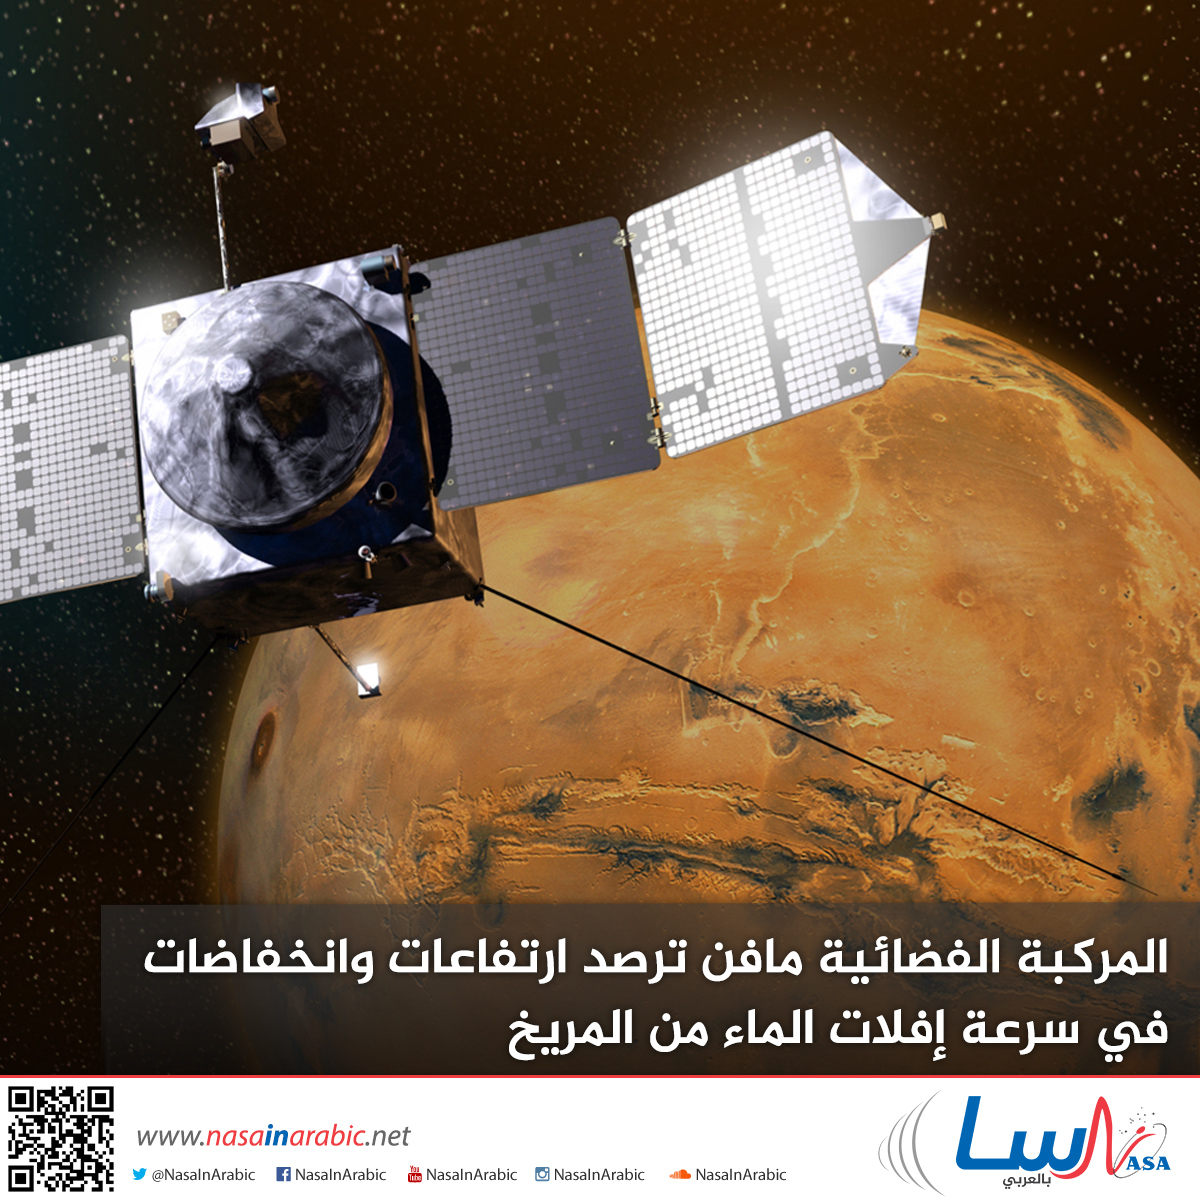 المركبة الفضائية مافن ترصد ارتفاعات وانخفاضات في سرعة إفلات الماء من المريخ